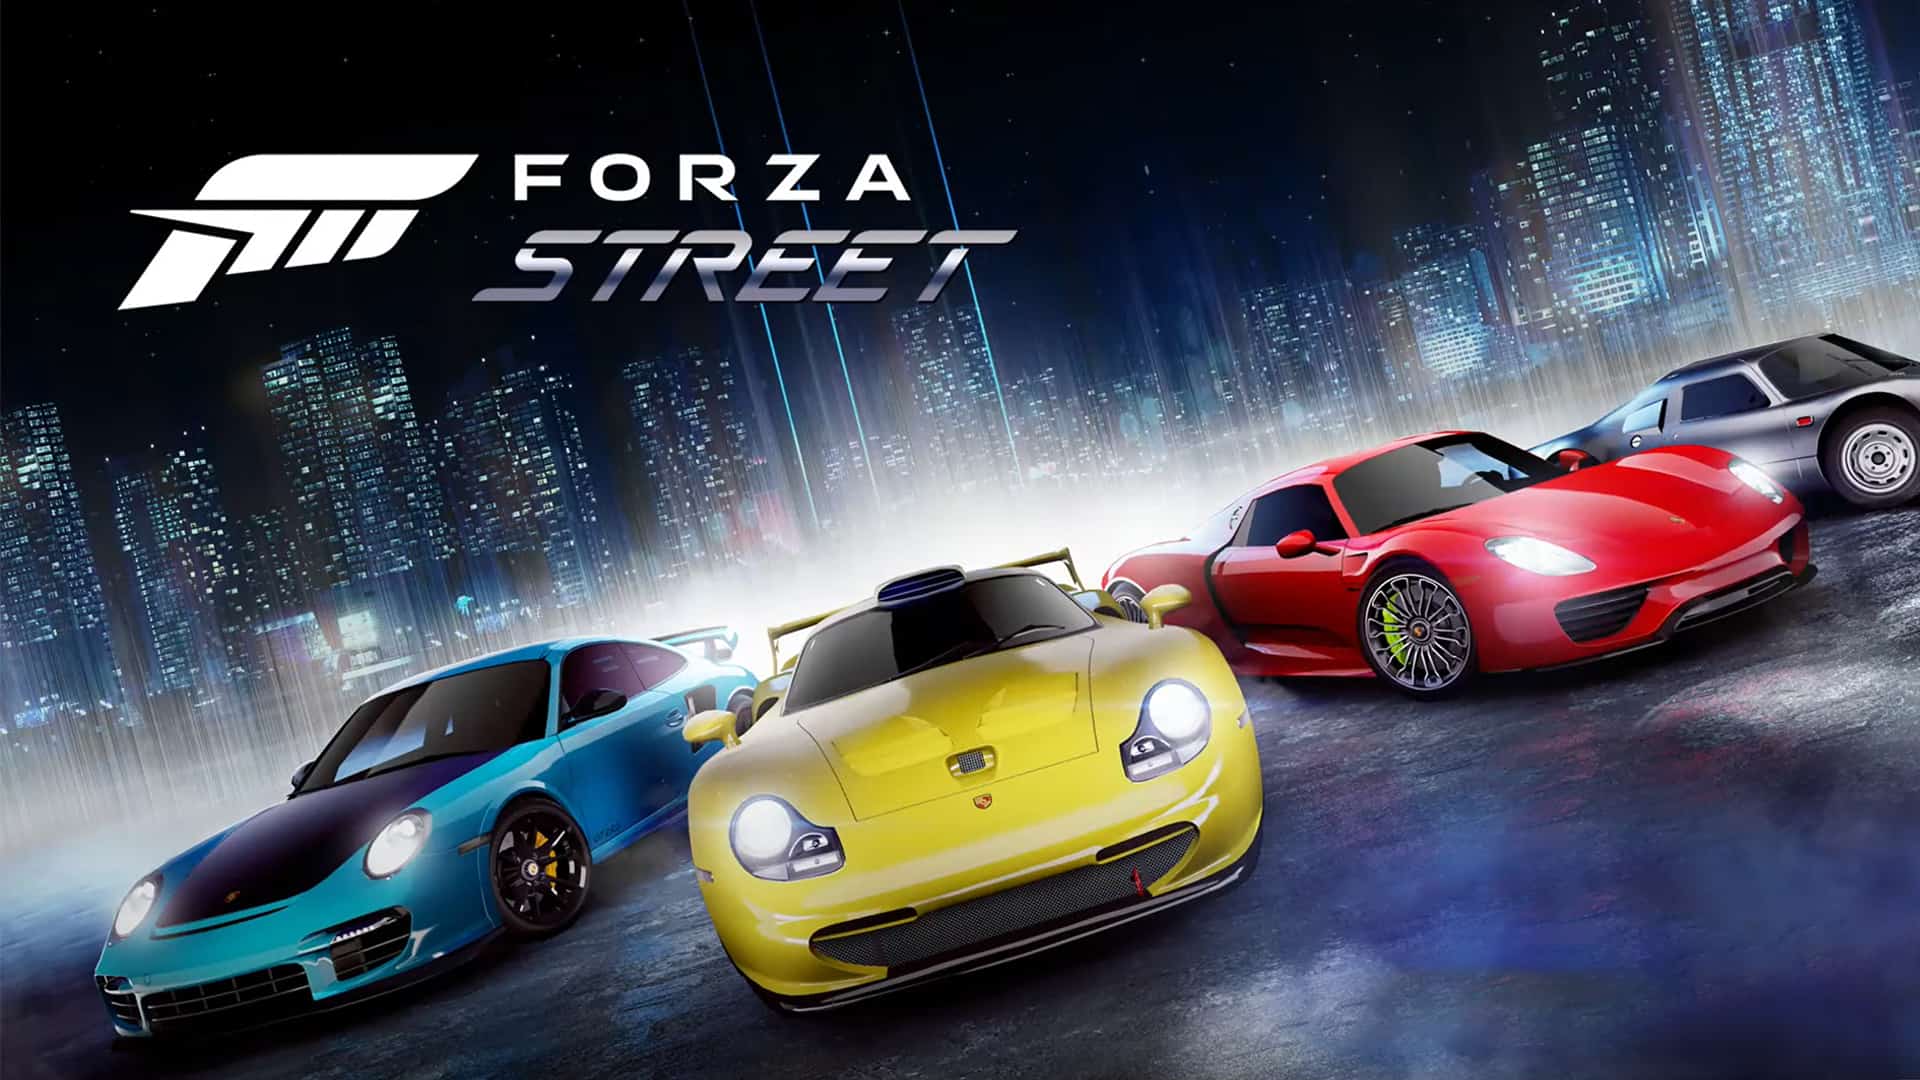 Porsche Showdown adds new car to Forza Street